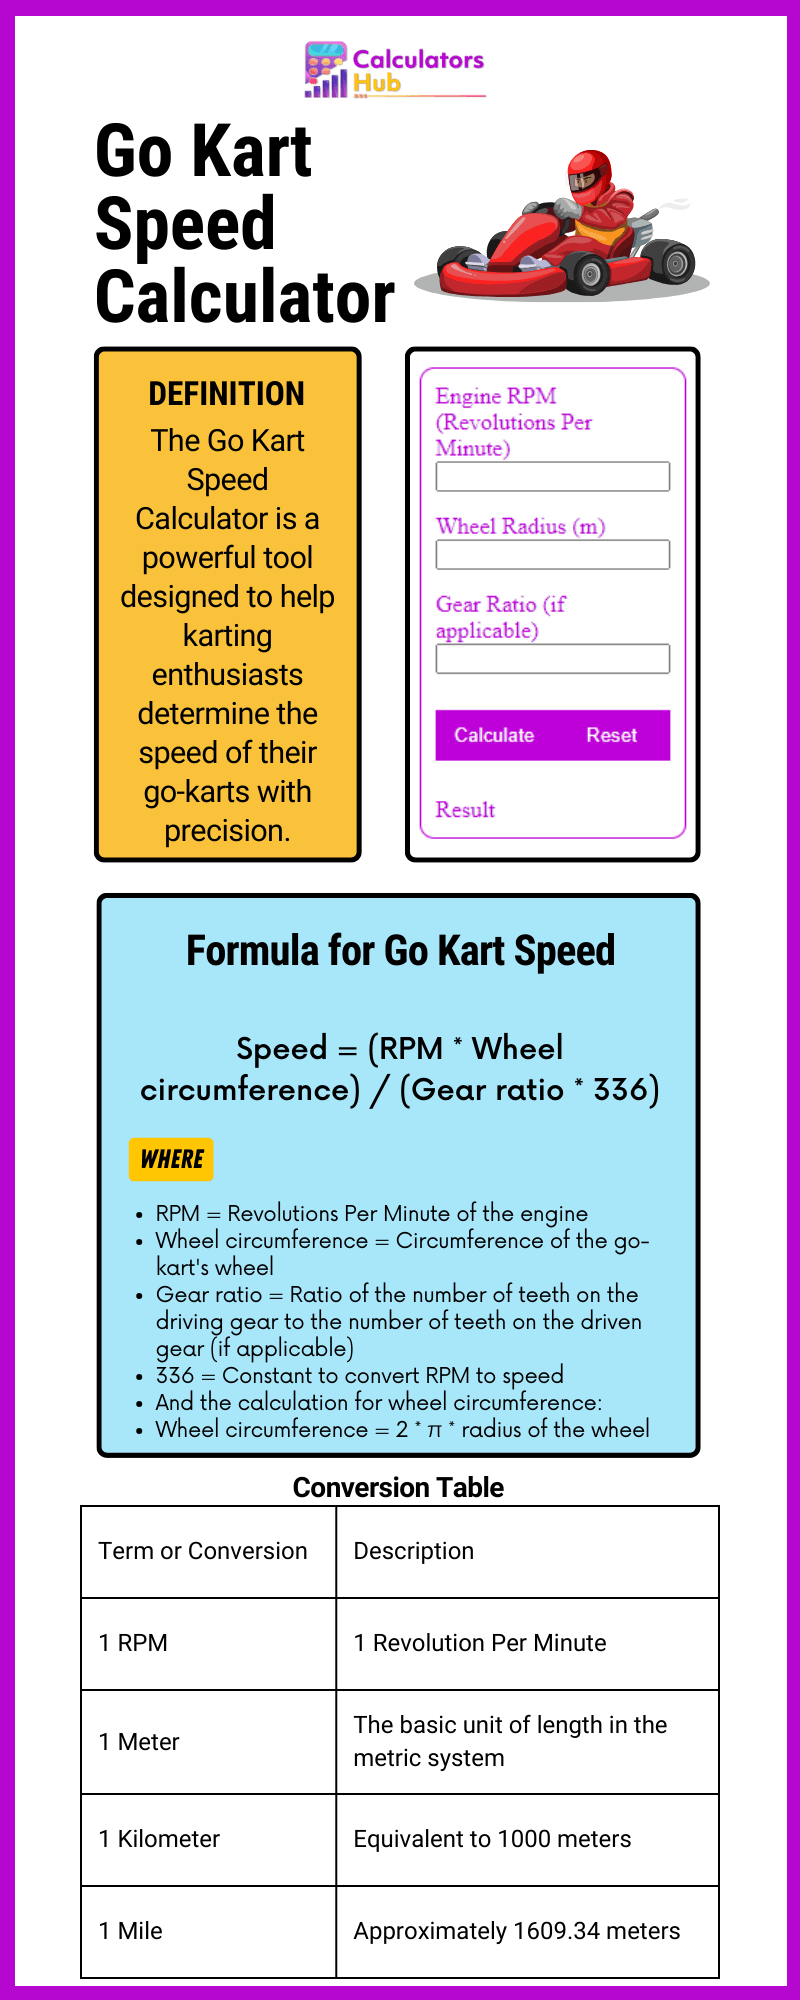 Go Kart Speed Calculator